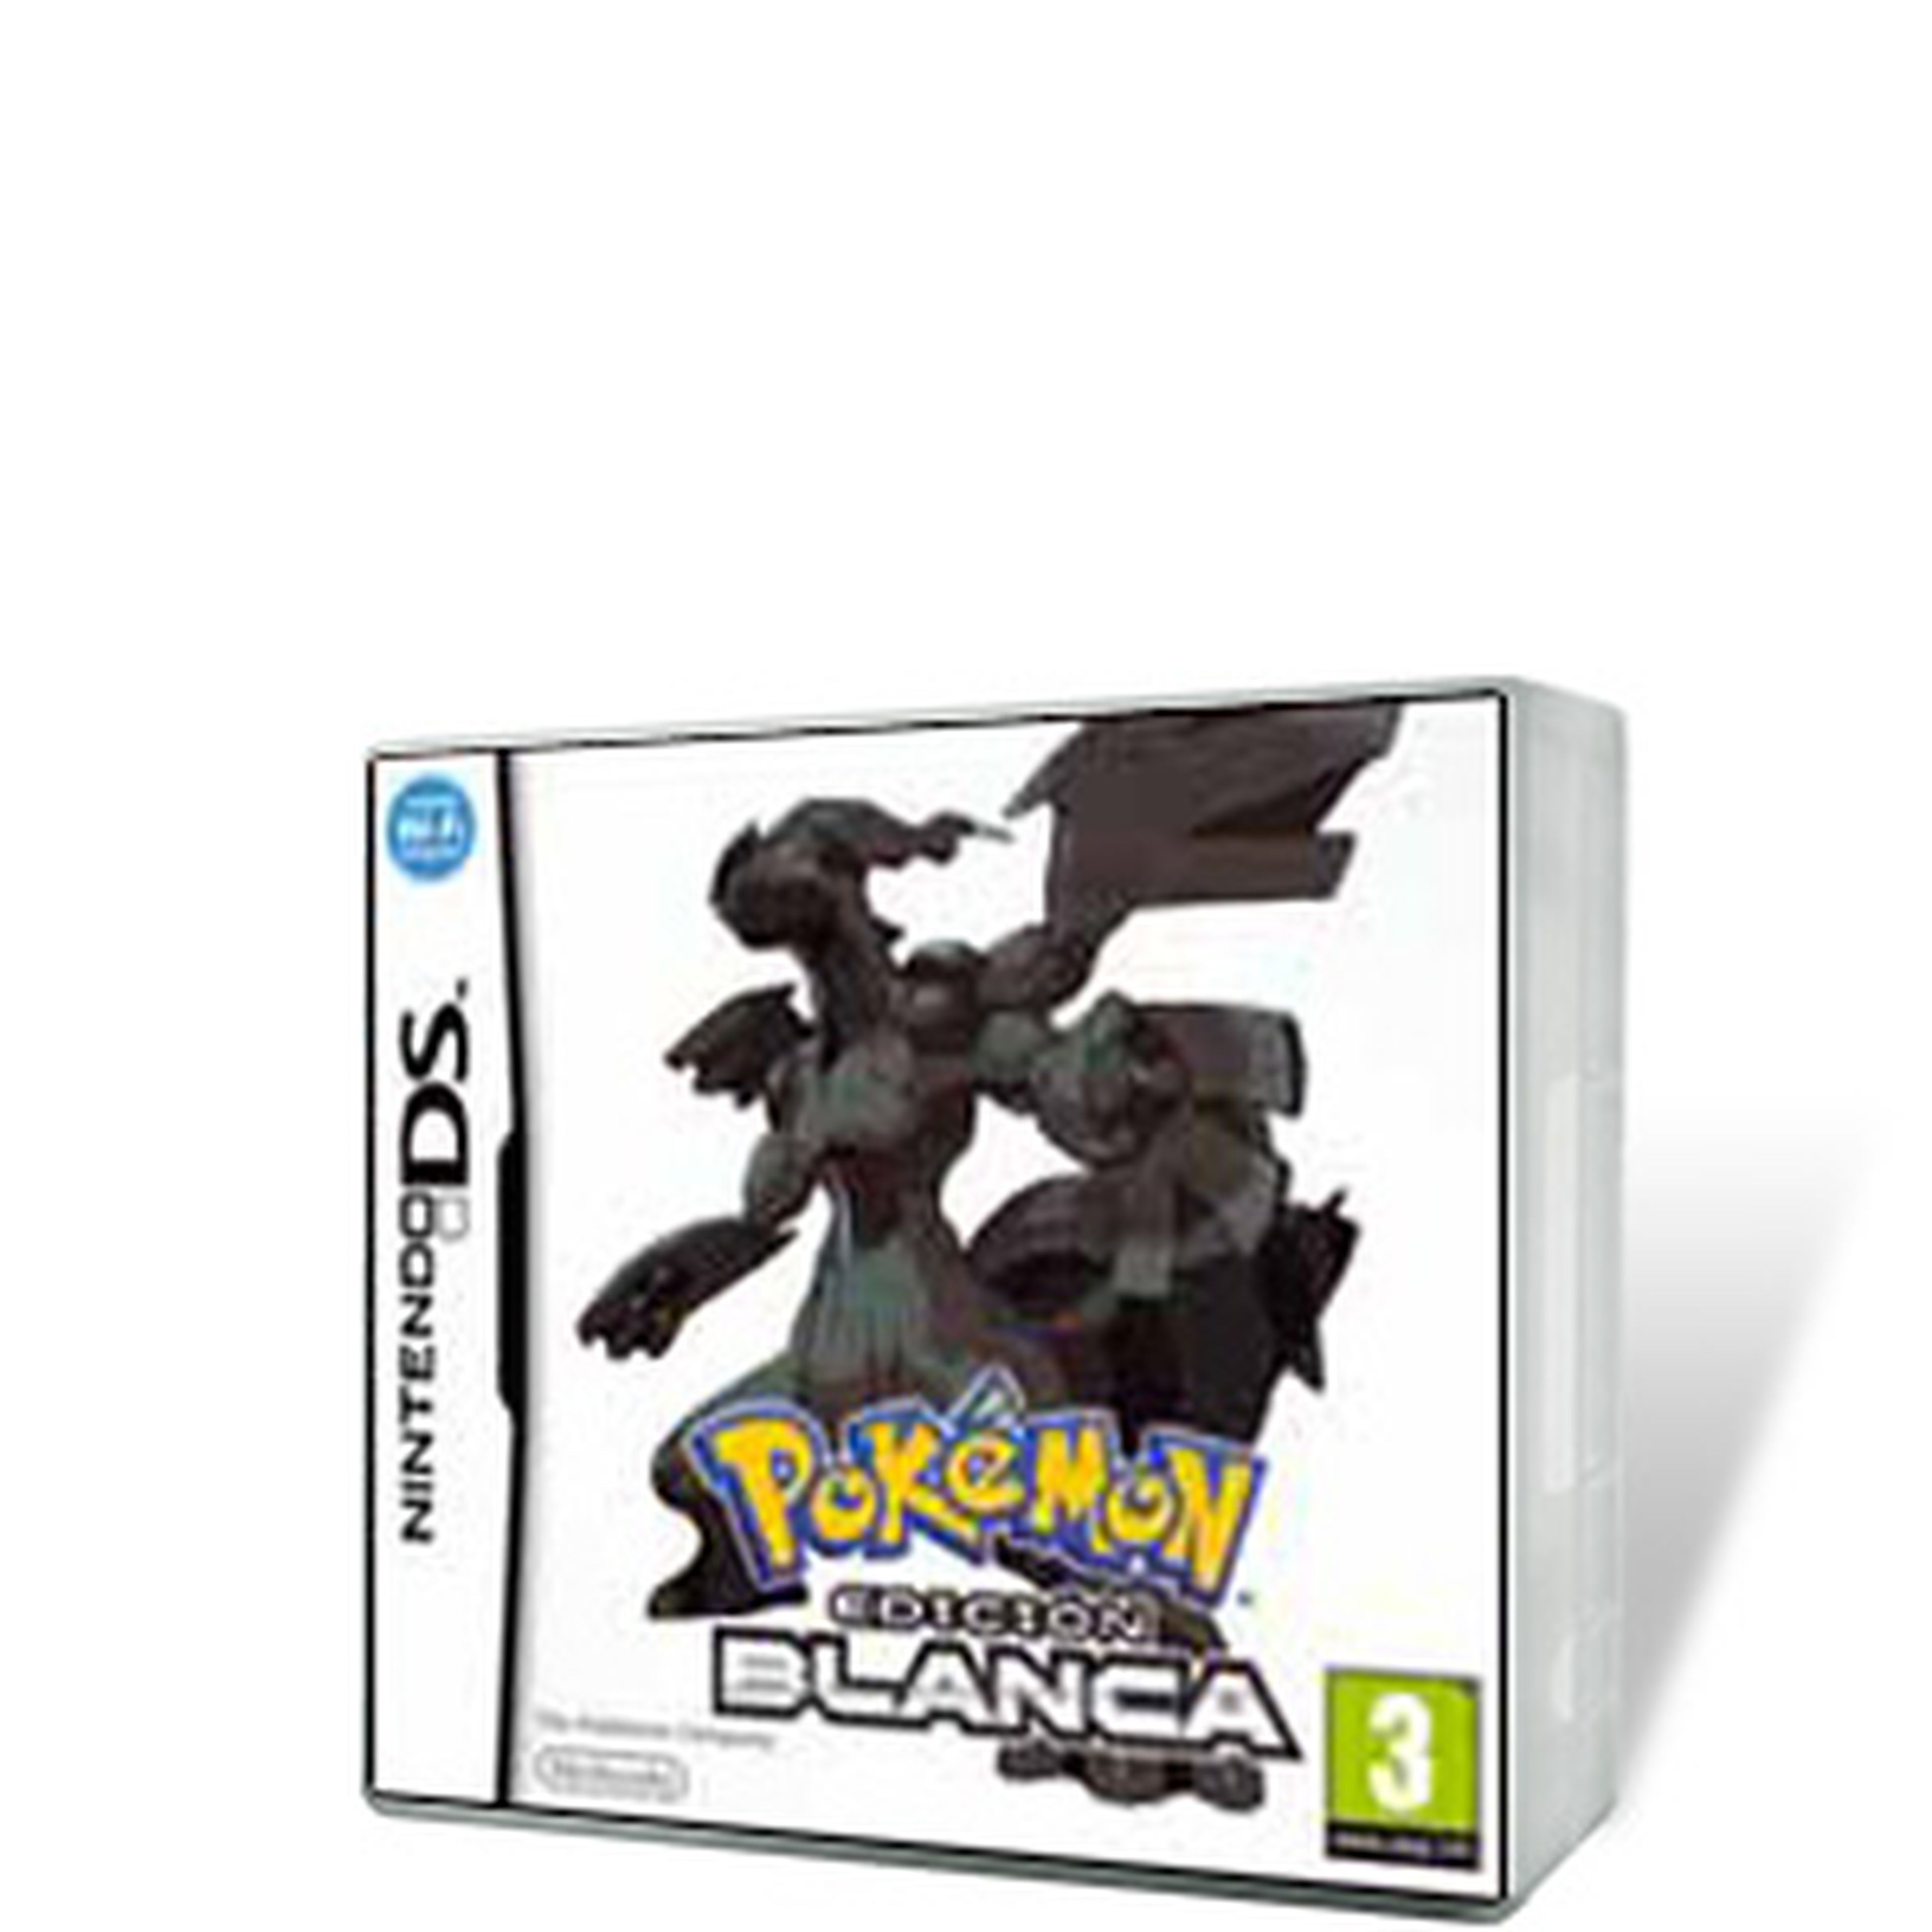 Pokémon Blanco y Negro para NDS